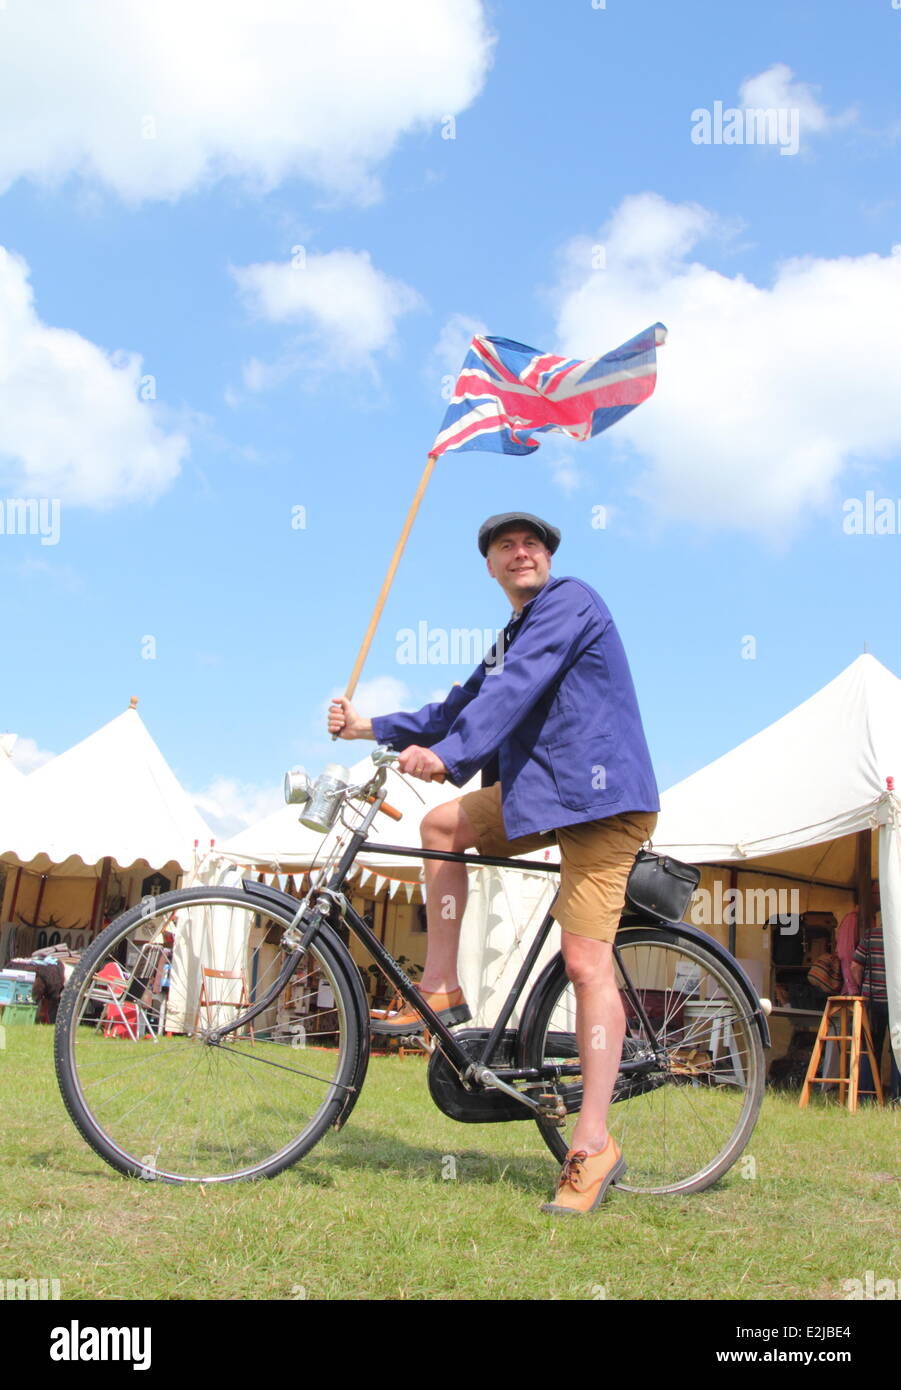 Bakewell, Derbyshire, Royaume-Uni 20 juin'14. Simon Doughty de Leicestershire entre dans l'esprit de la première L'Eroica Britannia pour célébrer la mode rétro, vélo vintage & gastronomie locale. Chaque année un festival à vélo en Italie depuis 1997, c'est la première fois que l'événement a été organisé au Royaume-Uni. Au cœur du festival est une route trois guidée de la Peak District. Sculpteur, Simon est signé jusqu'à la 30 km d''équitation, ses années 30, ex-police Northamptonshire Raleigh vélo. © Deborah Vernon/Alamy Live News Crédit : Deborah Vernon/Alamy Live News Banque D'Images